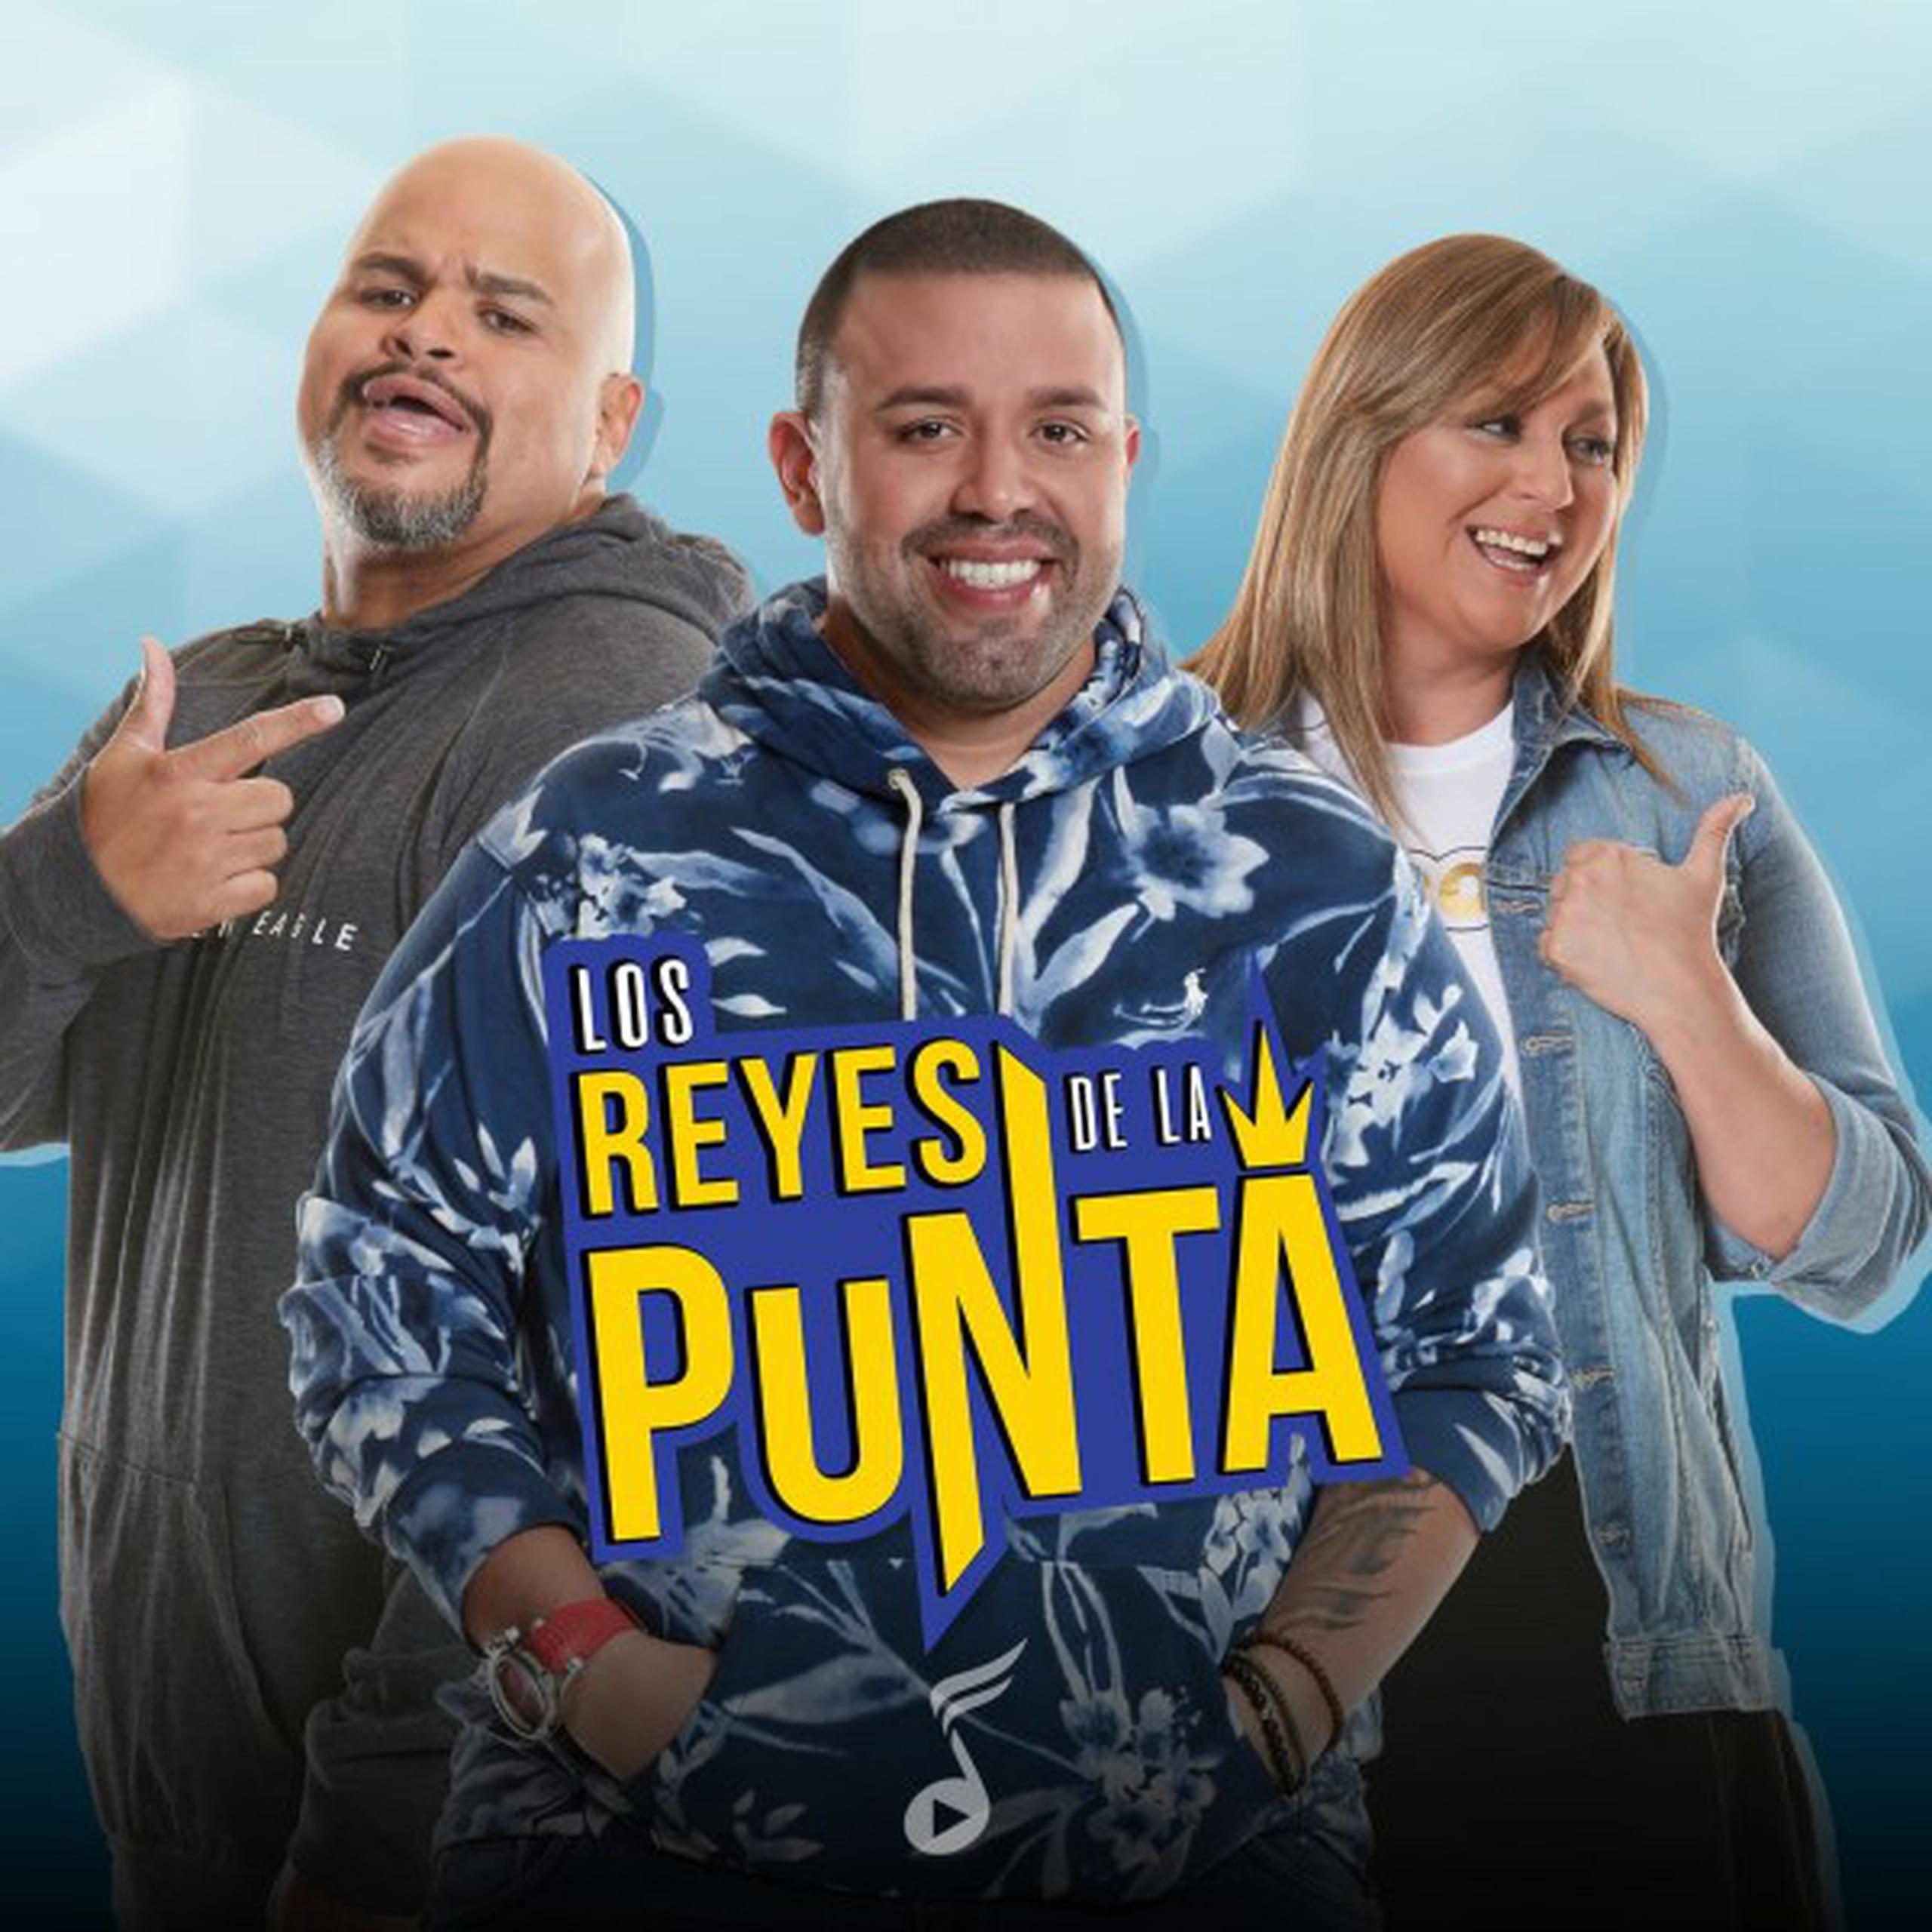 Todos los programas de radio estarán al aire de manera remota y parcial. Los Reyes de la Punta se transmitirá a las 3:00 pm.